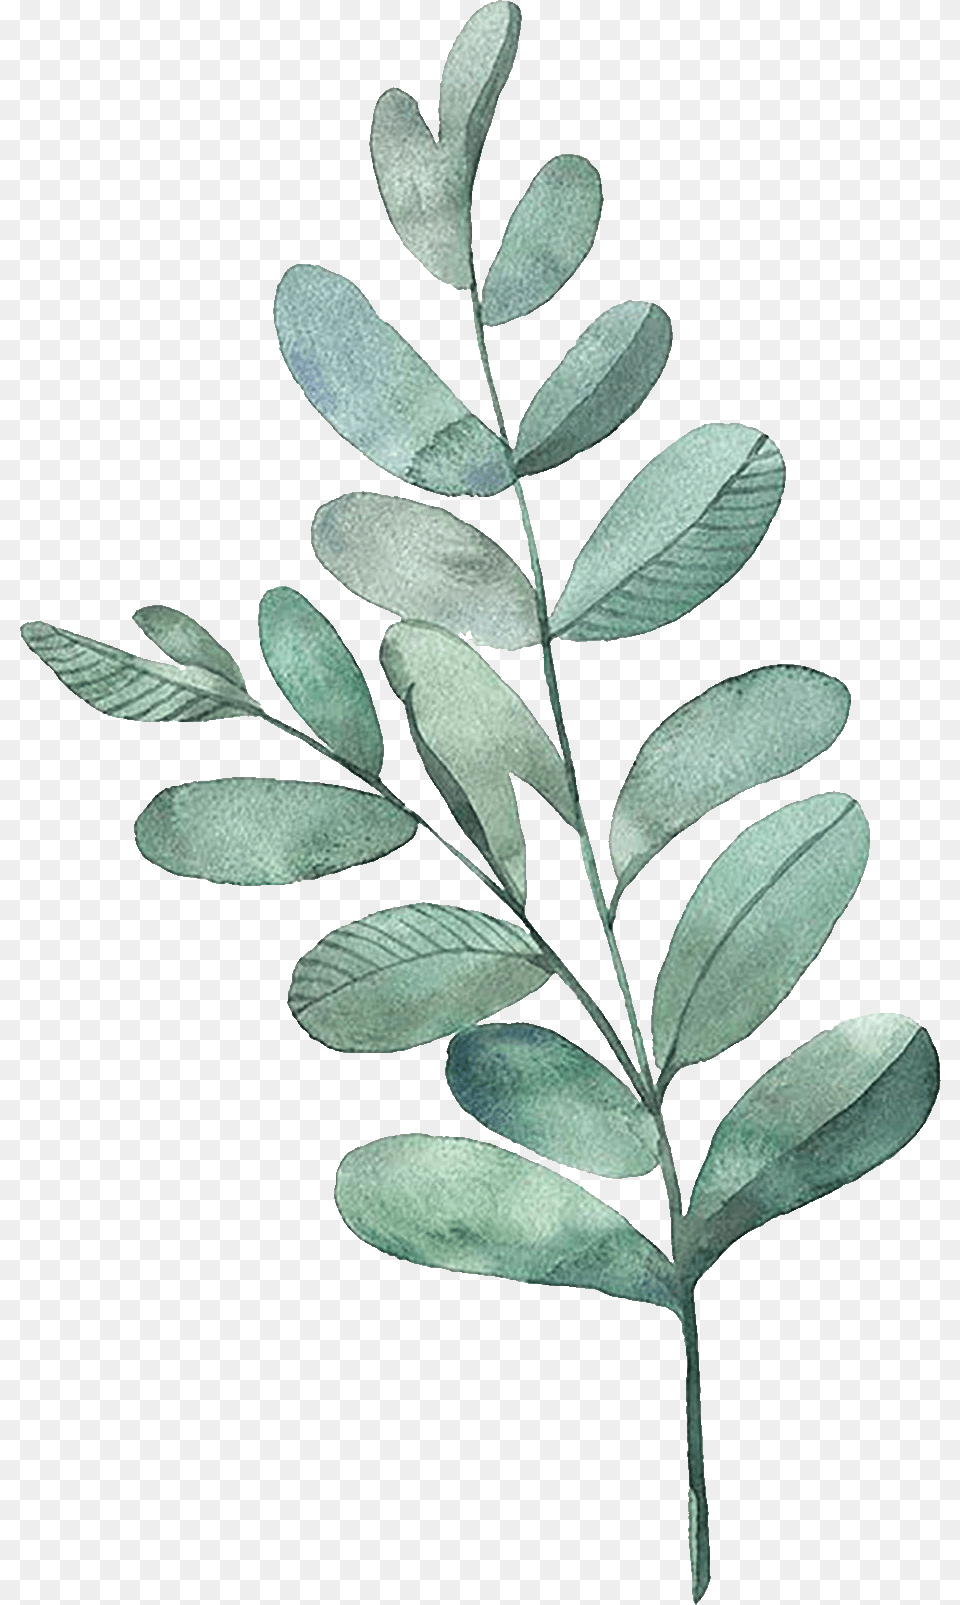 Watercolor Painting Leaf Illustration Watercolor Leaves Transparent Watercolor Leaves, Astragalus, Flower, Herbal, Herbs Png